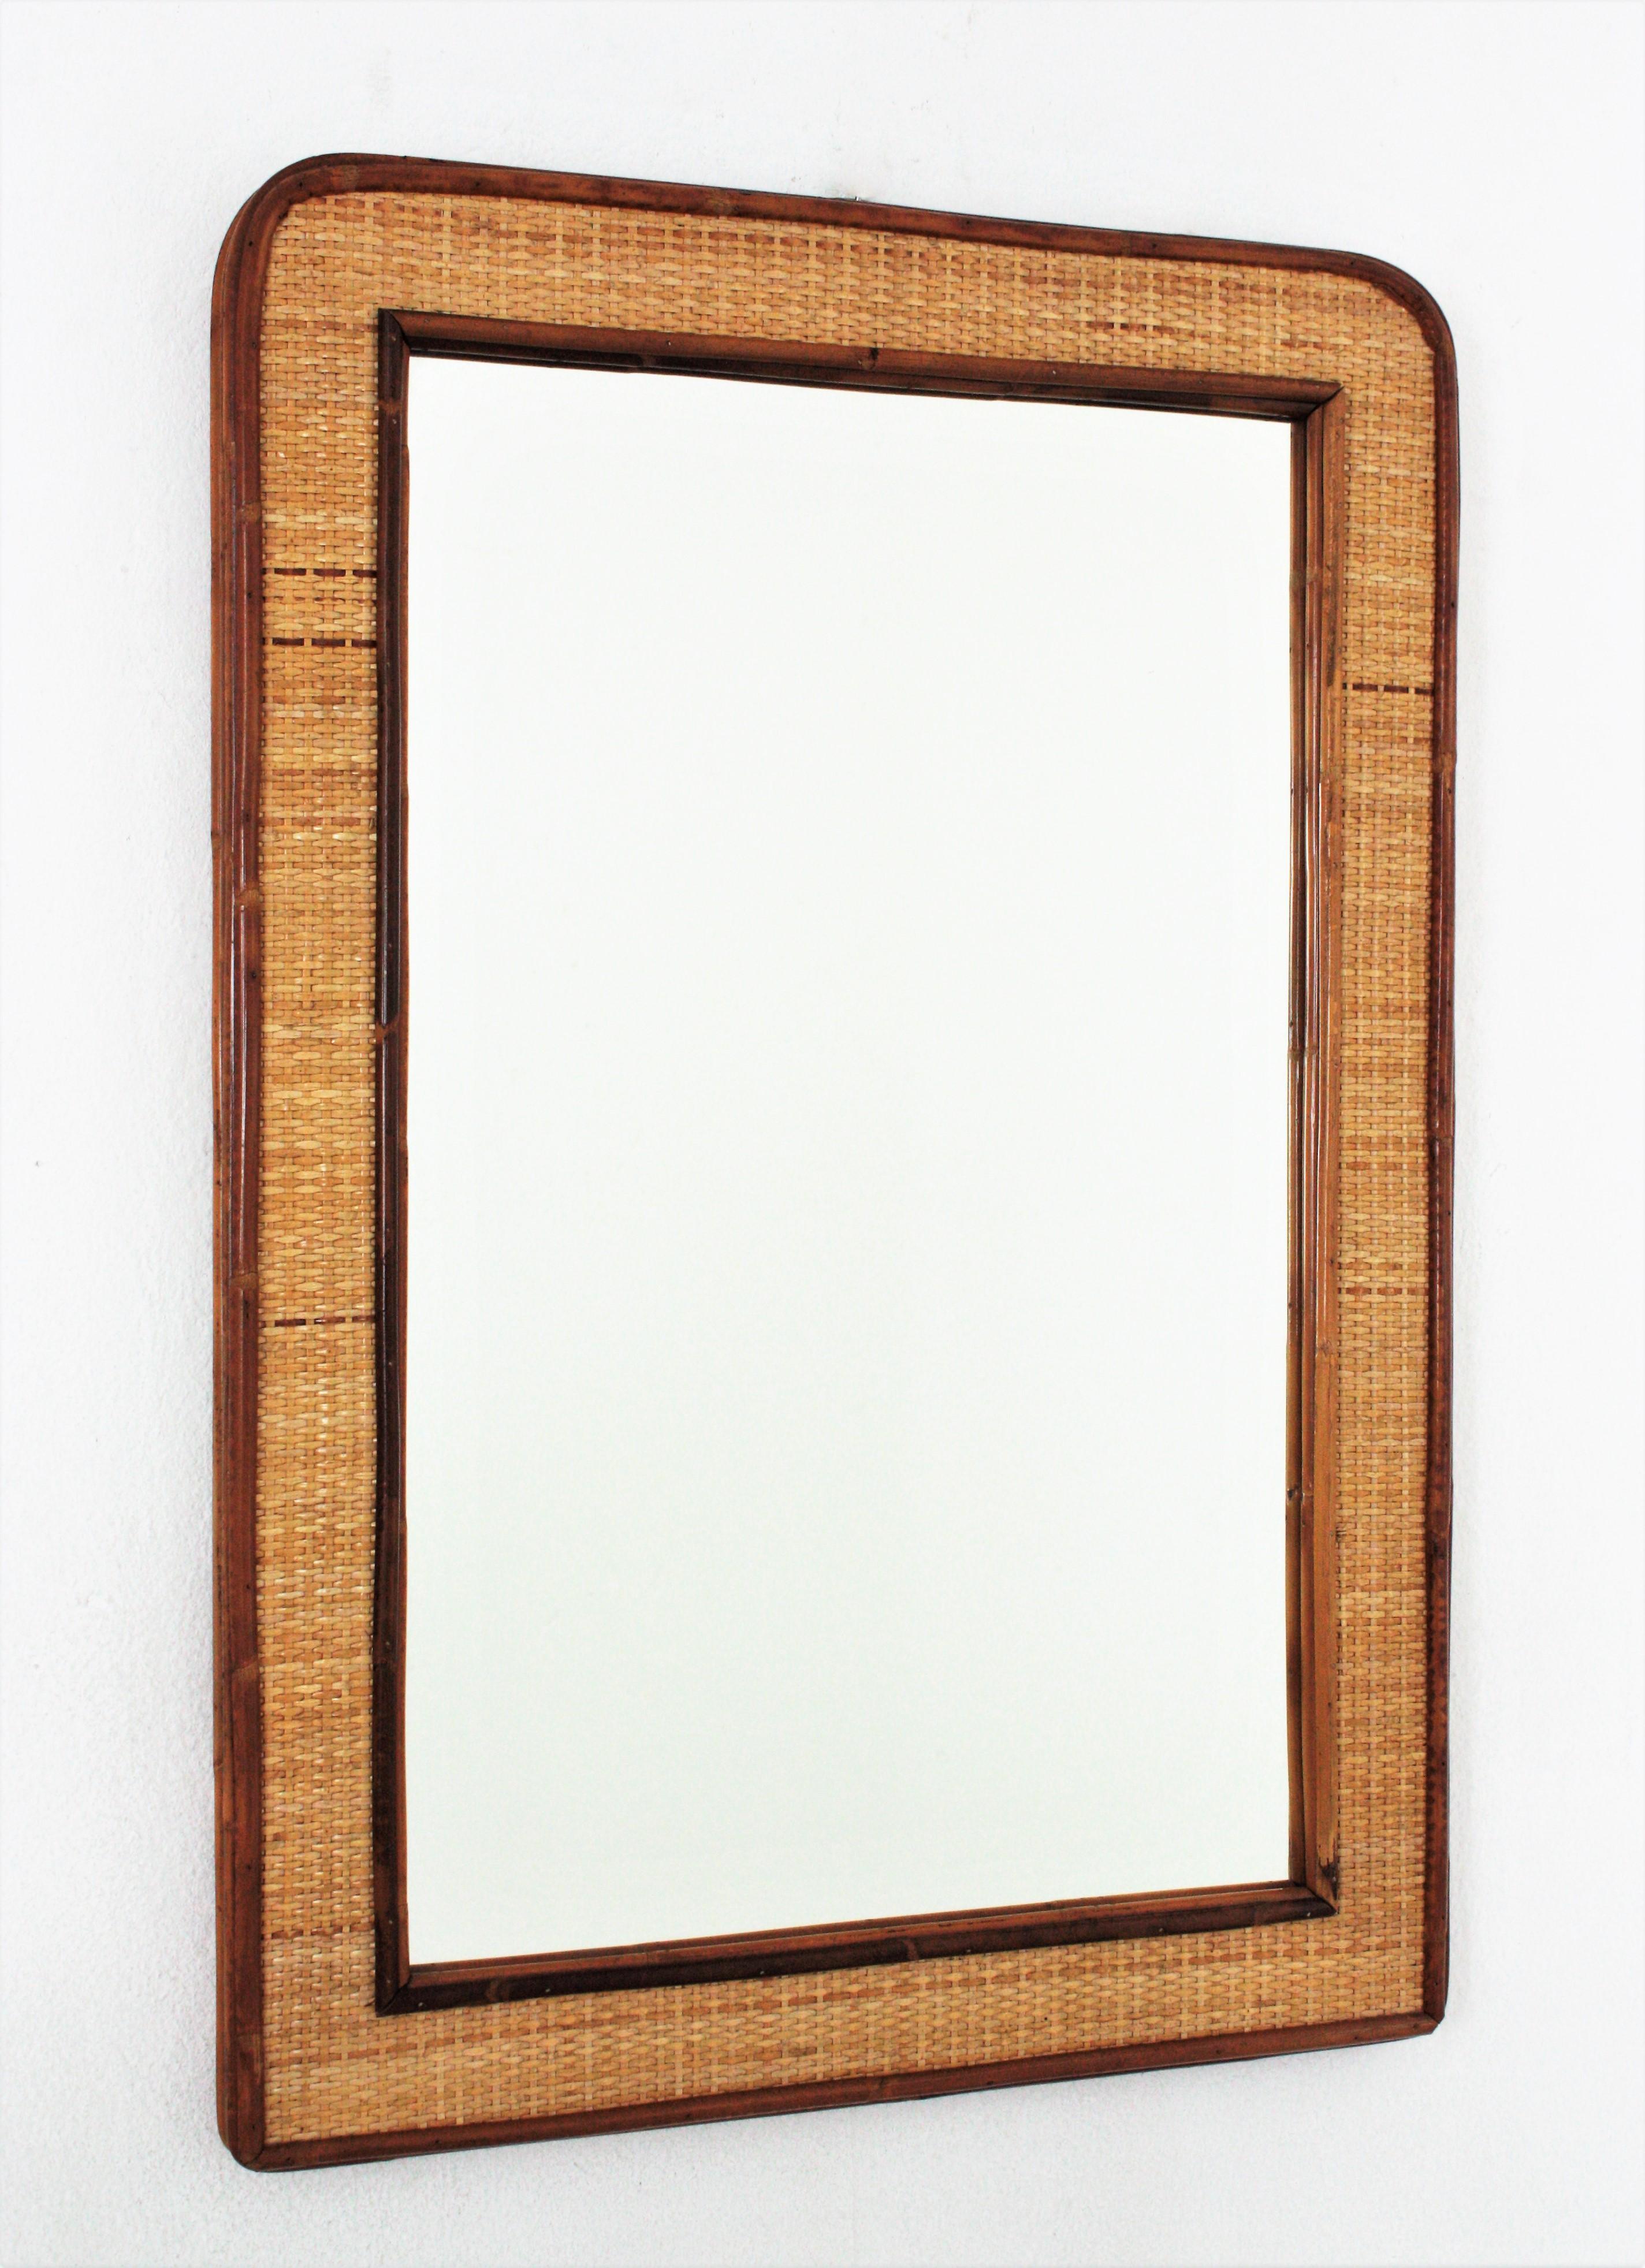 Großer rechteckiger Spiegel aus Rattan und Weide, Italien, 1970er Jahre
Eleganter Spiegel aus Weidengeflecht und Bambus aus der Mitte des 20. Jahrhunderts.
Dieser rechteckige Spiegel aus Rattan und Weide stammt aus den 1970er Jahren. Ein